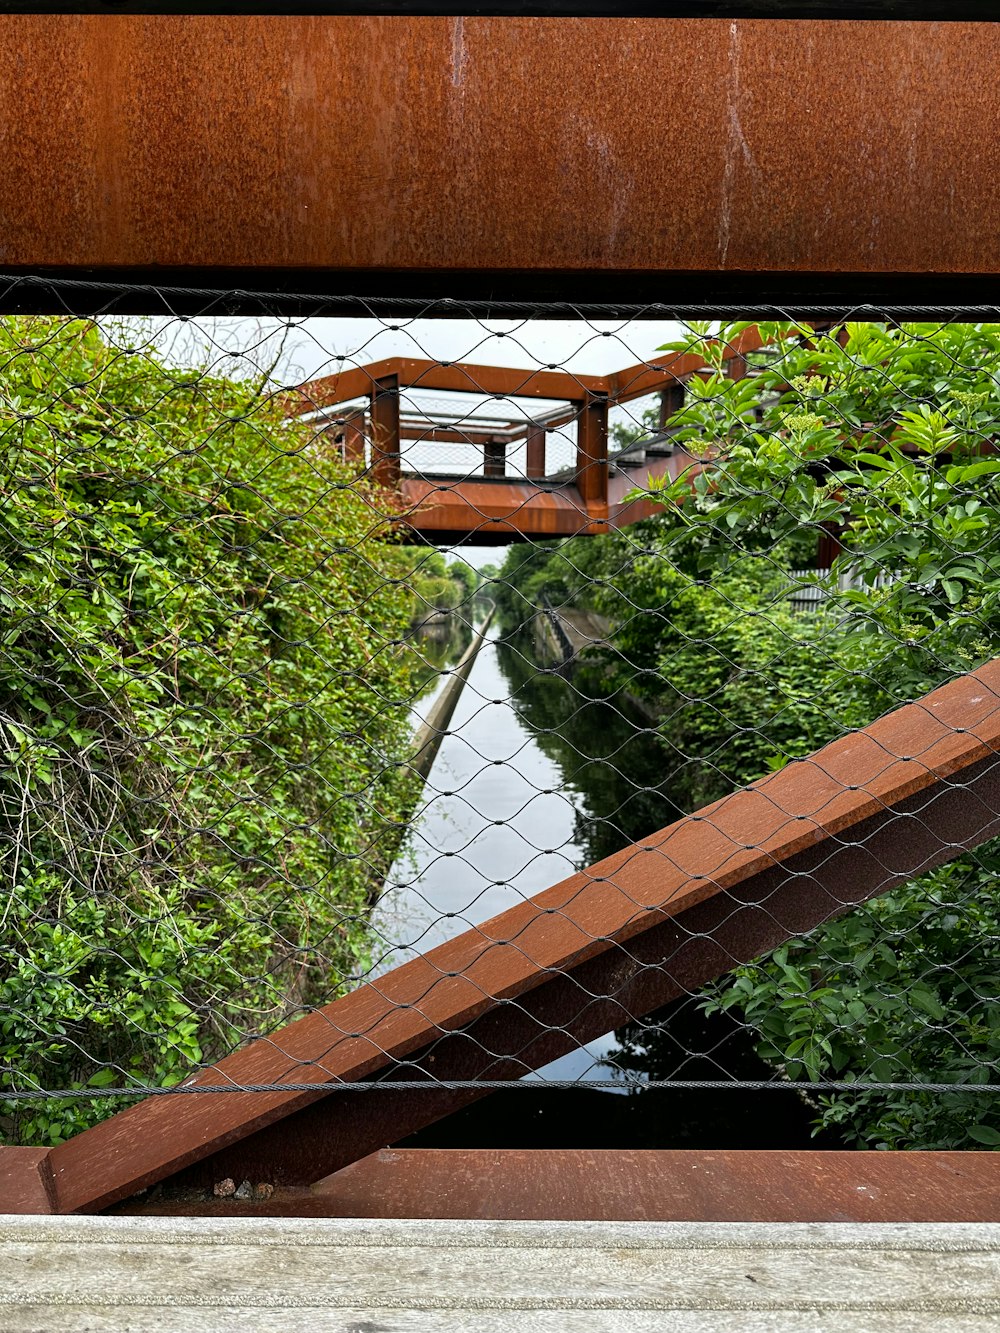 a view of a bridge over a river through a fence